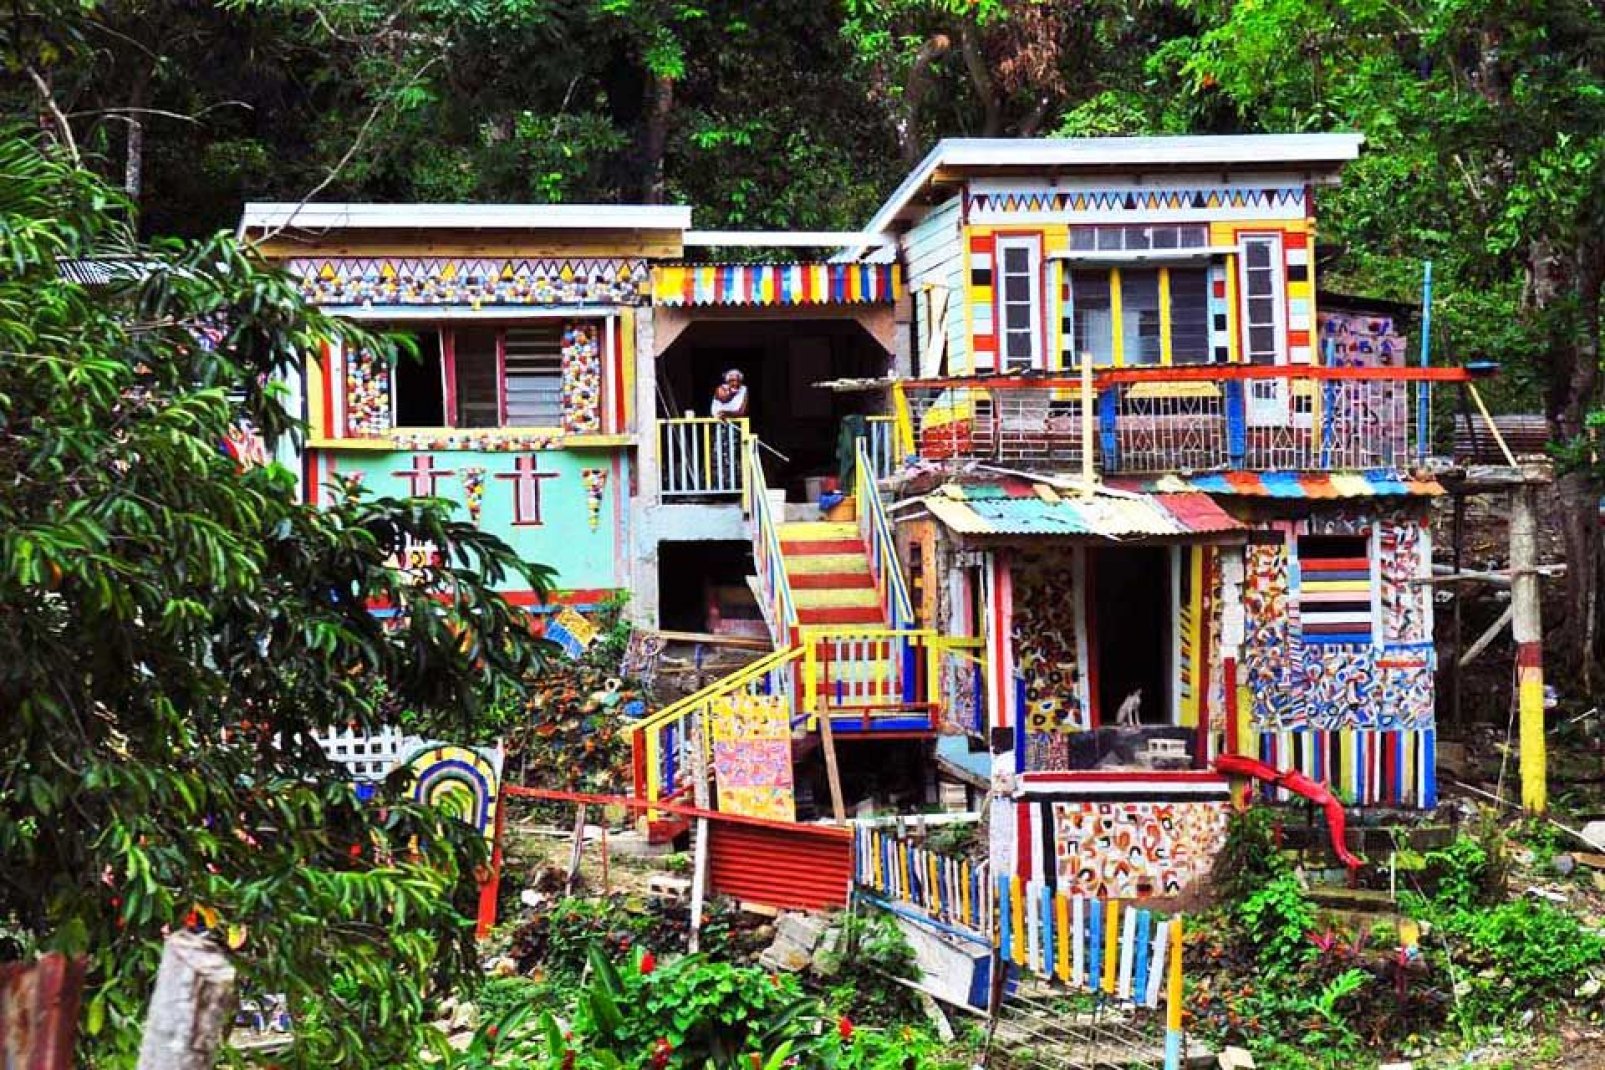 La ville attire de nombreux touristes, curieux de découvrir ces incroyables maisons multicolores.